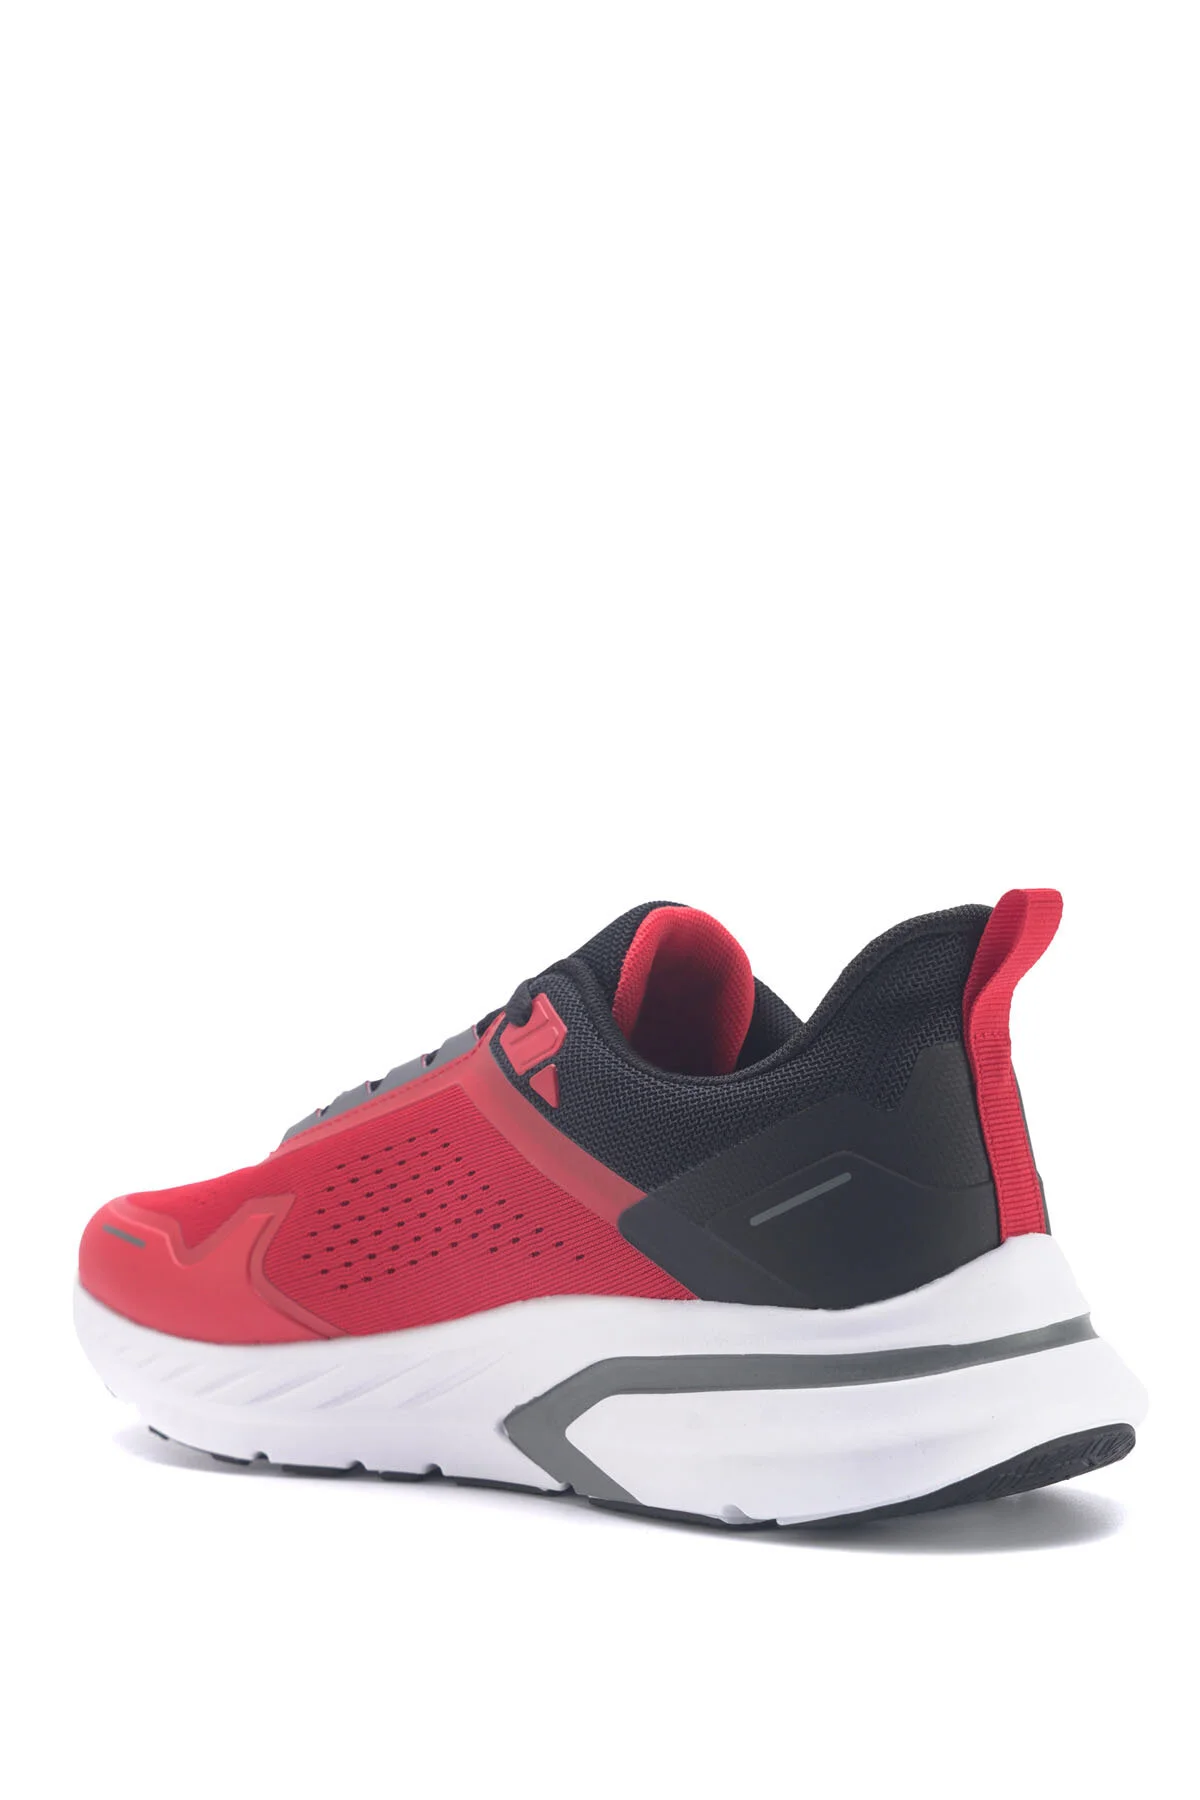 LOVELO 3FX Erkek Koşu Ayakkabısı-Kırmızı - Thumbnail